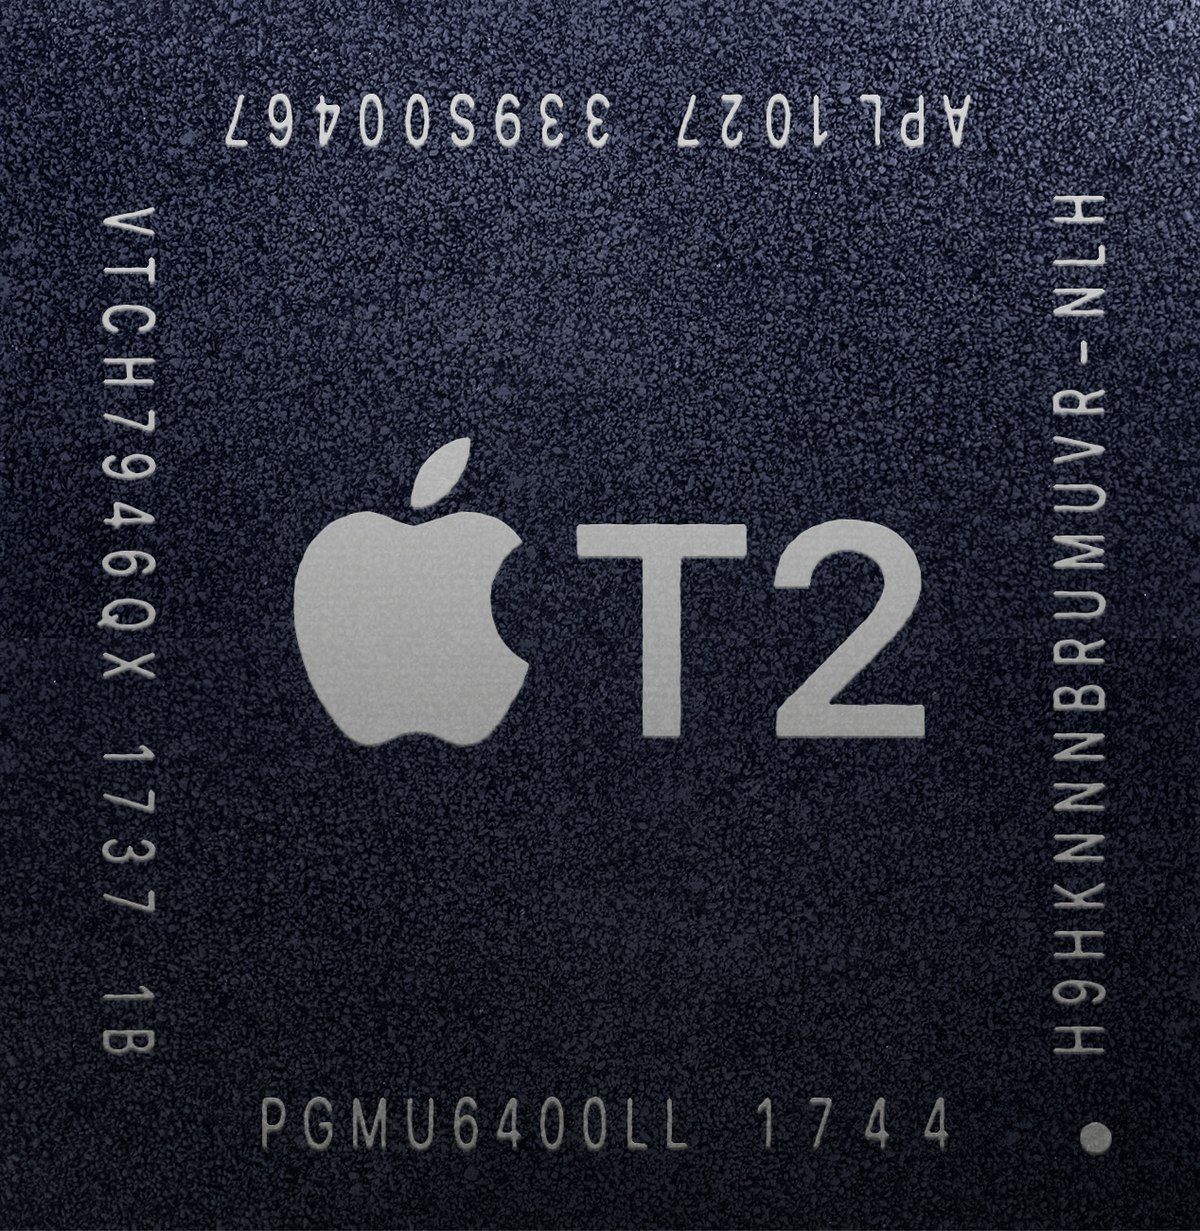 蘋果的 T2 晶片